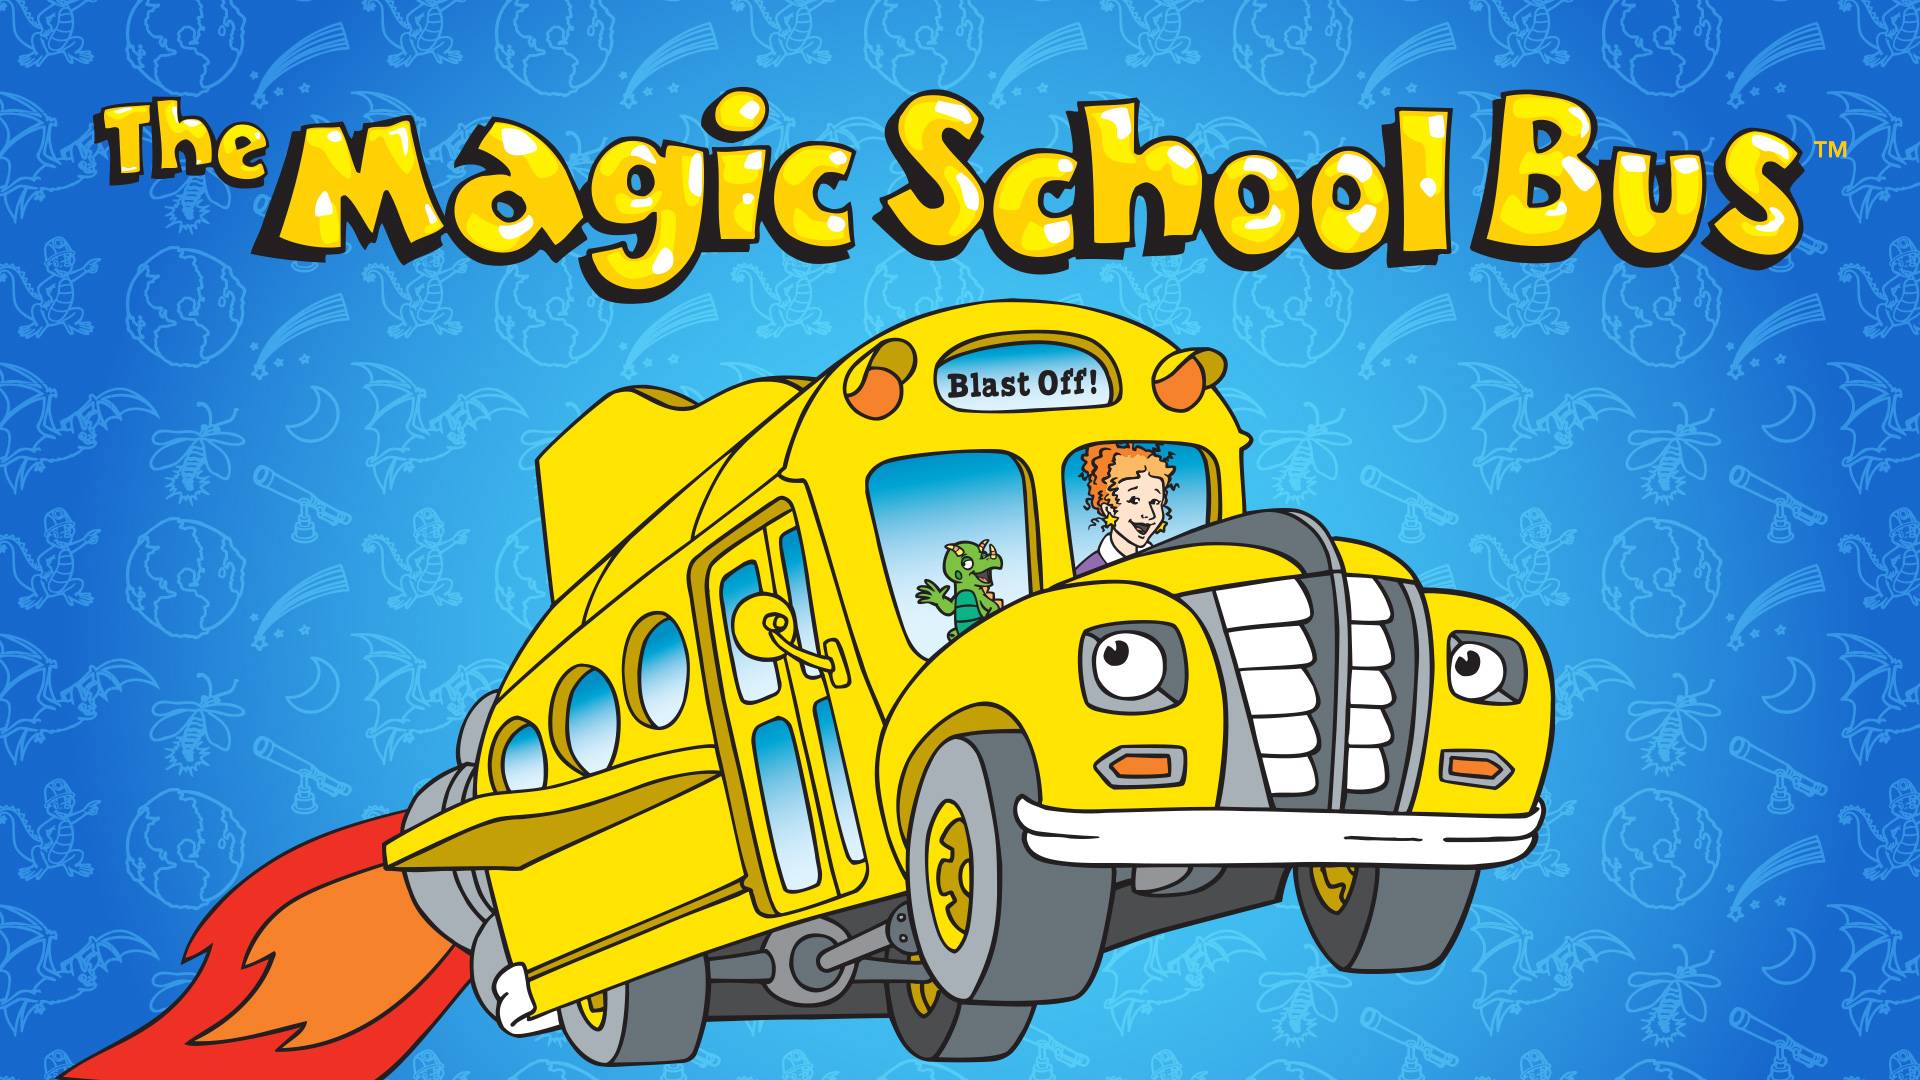 Magic school bus. Волшебный школьный автобус.